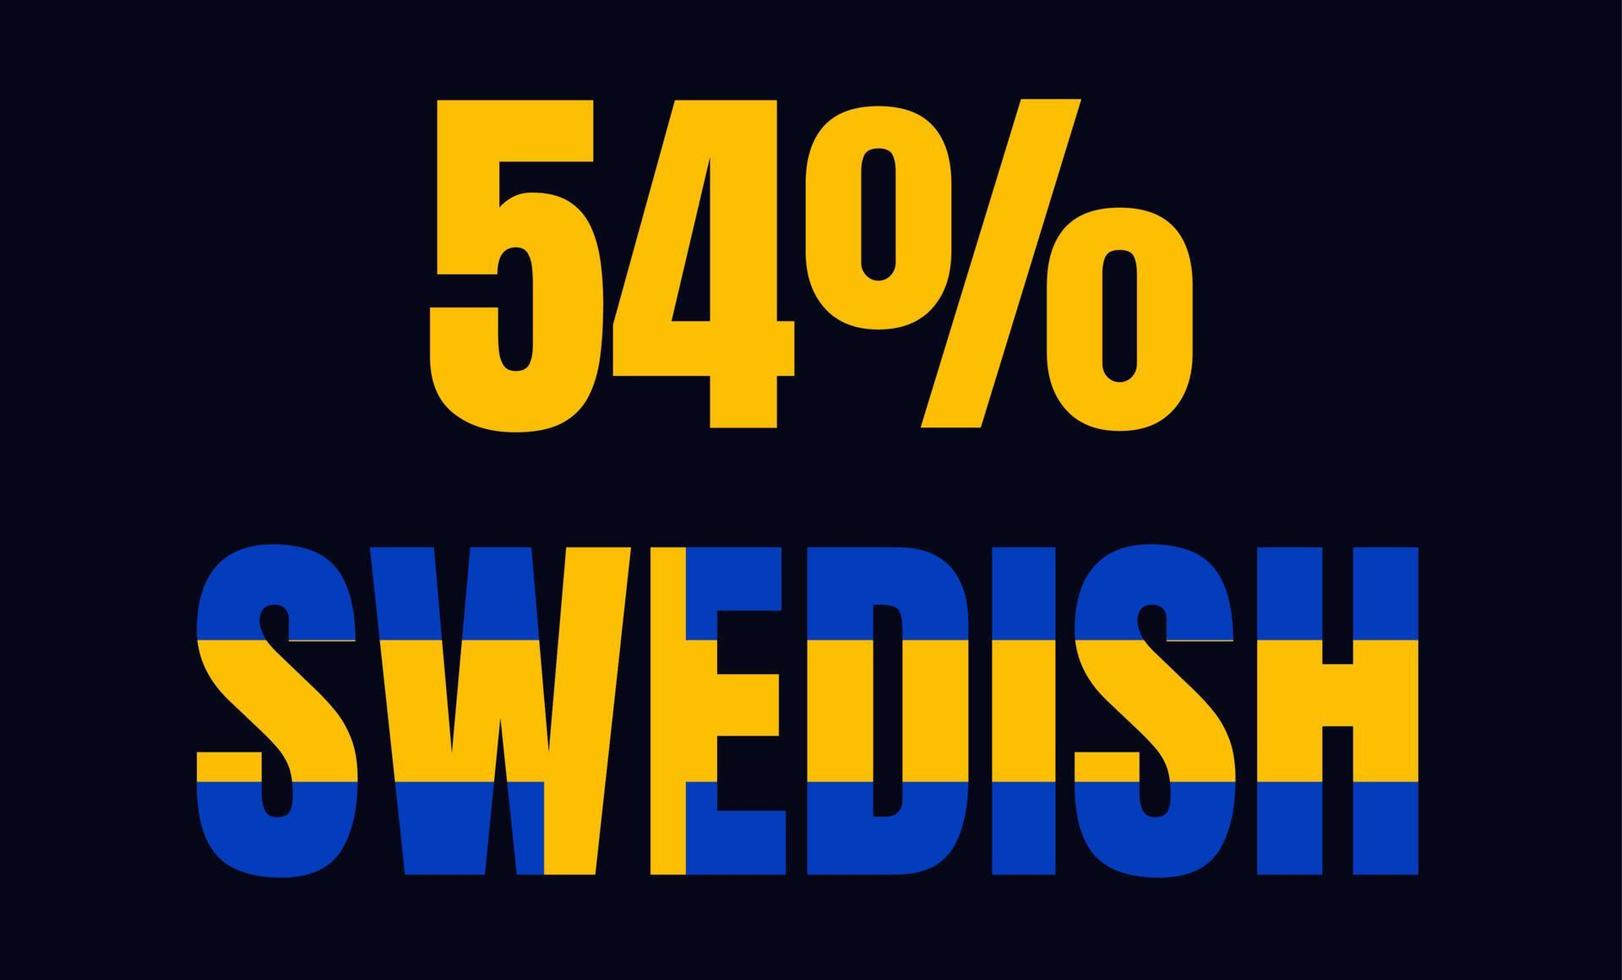 54 pourcentage suédois signe étiquette vector art illustration avec police fantastique et couleur jaune bleu